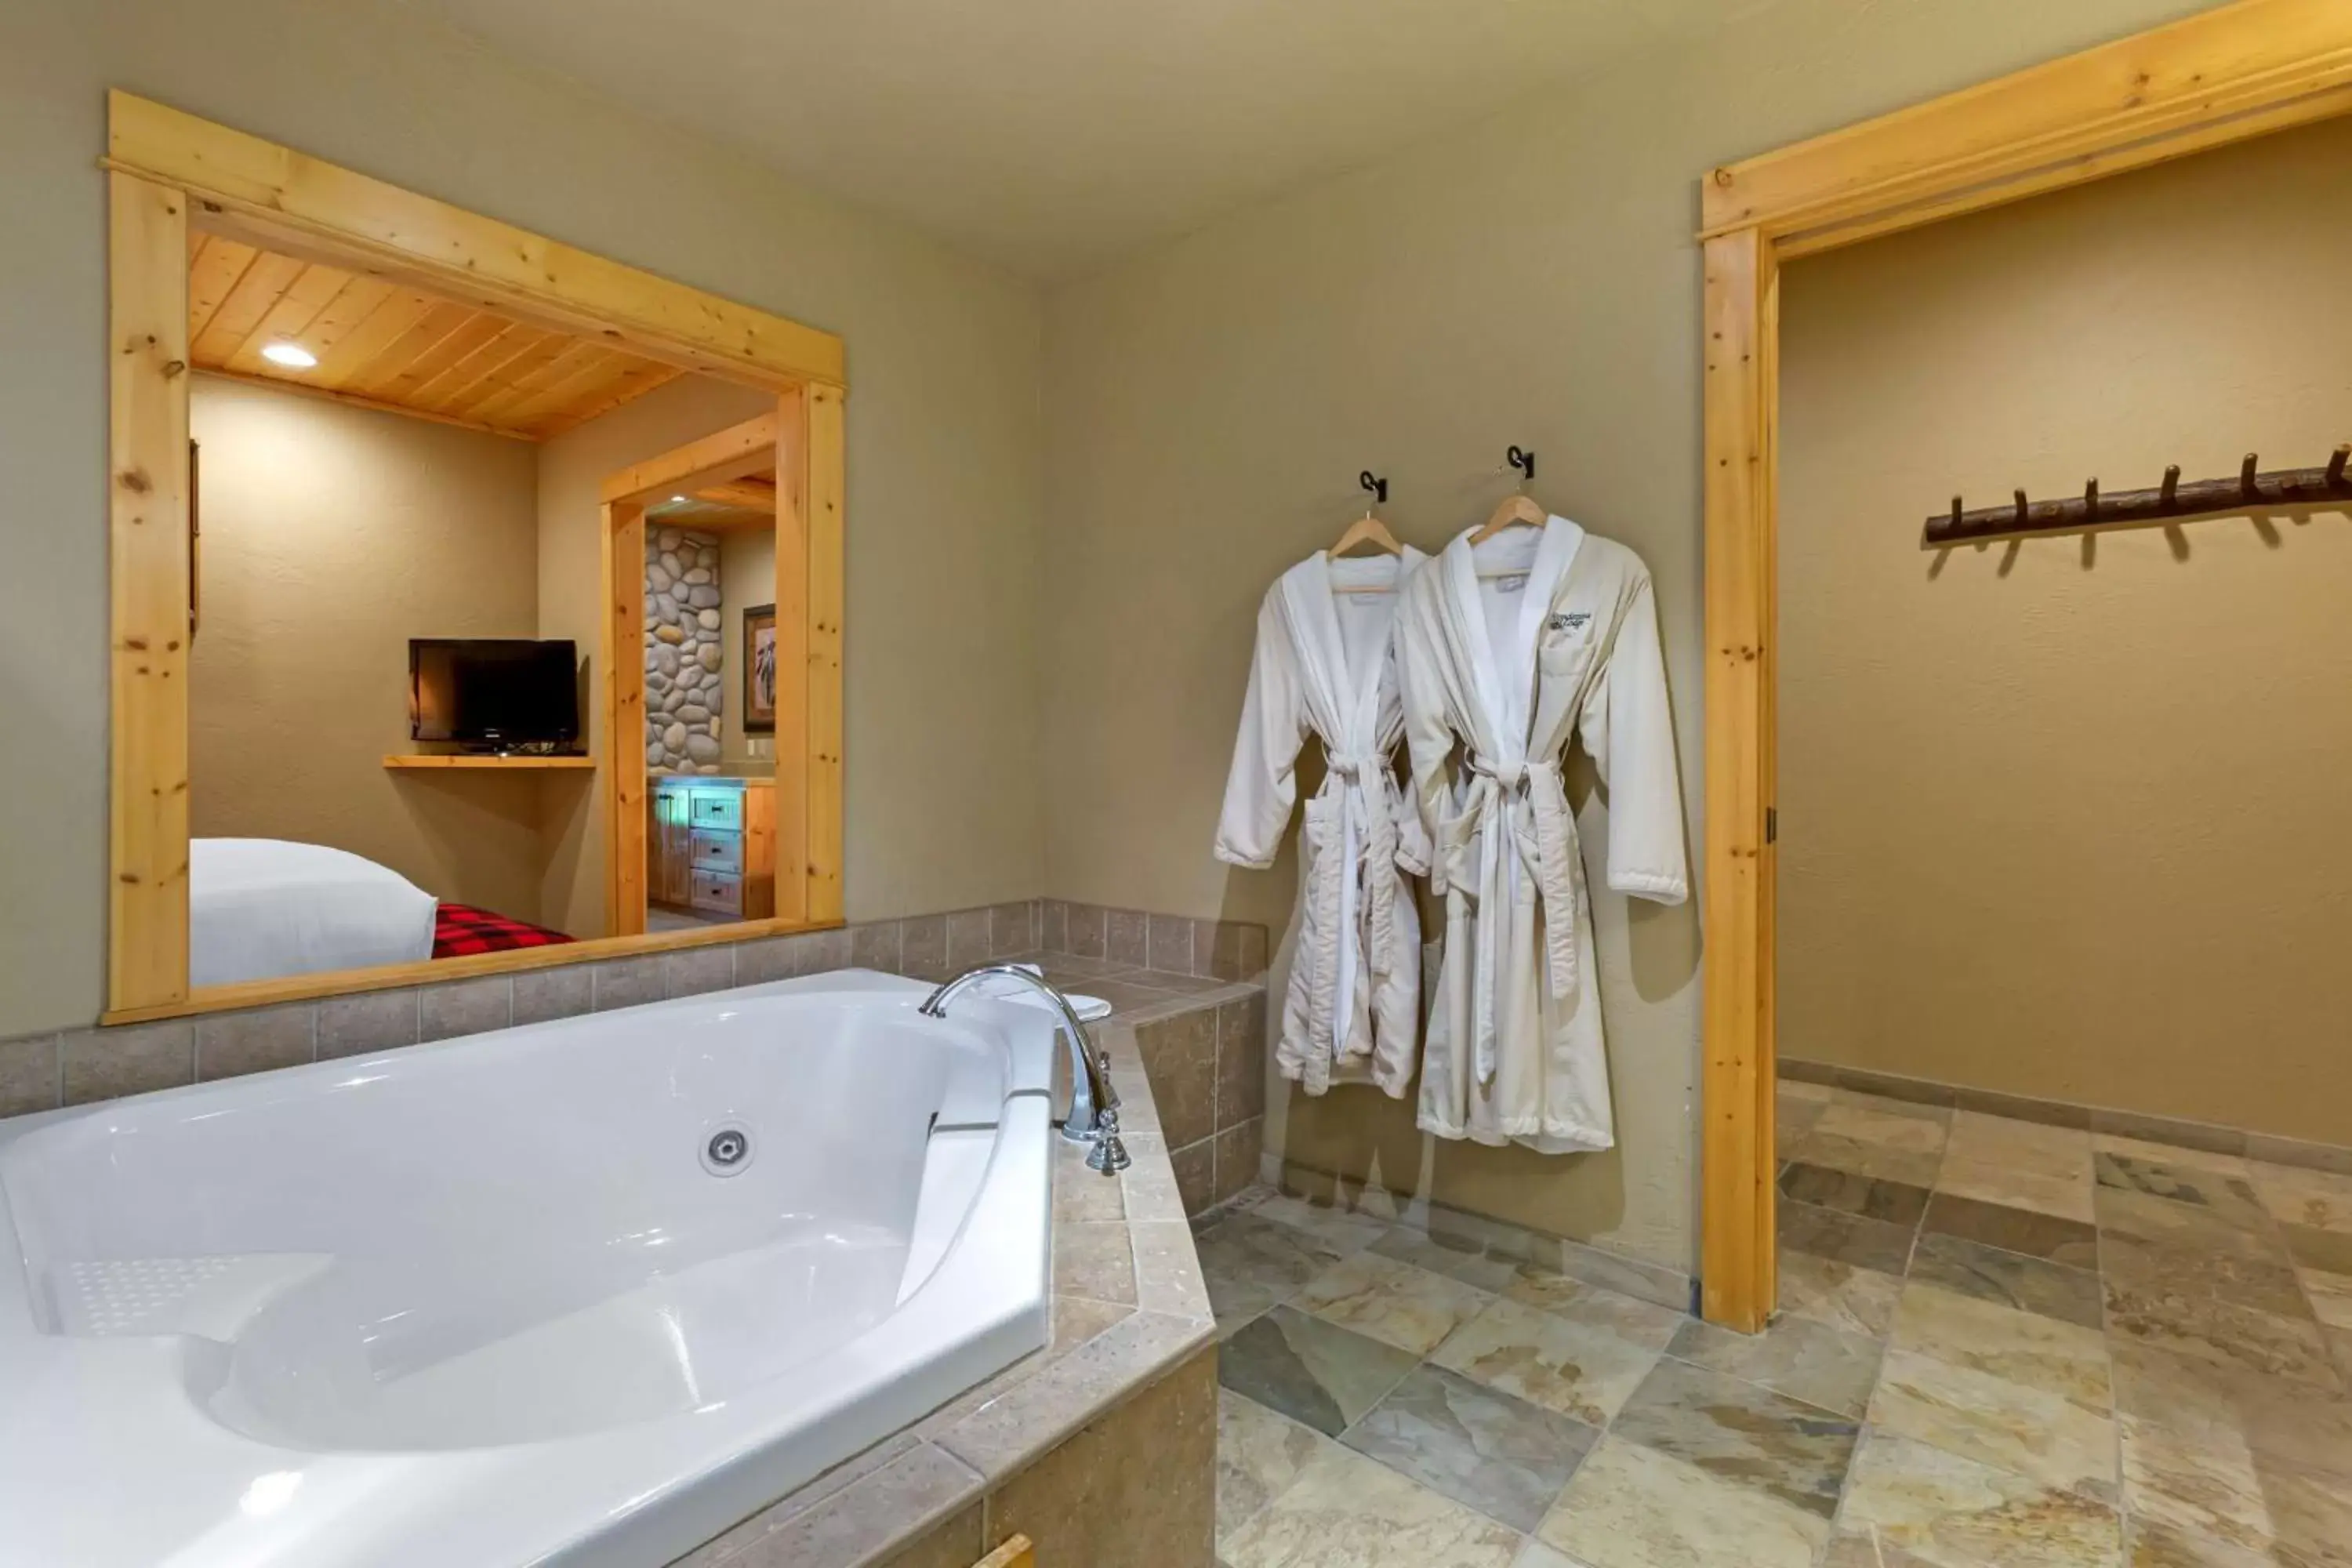 Bathroom, Spa/Wellness in Best Western Ponderosa Lodge